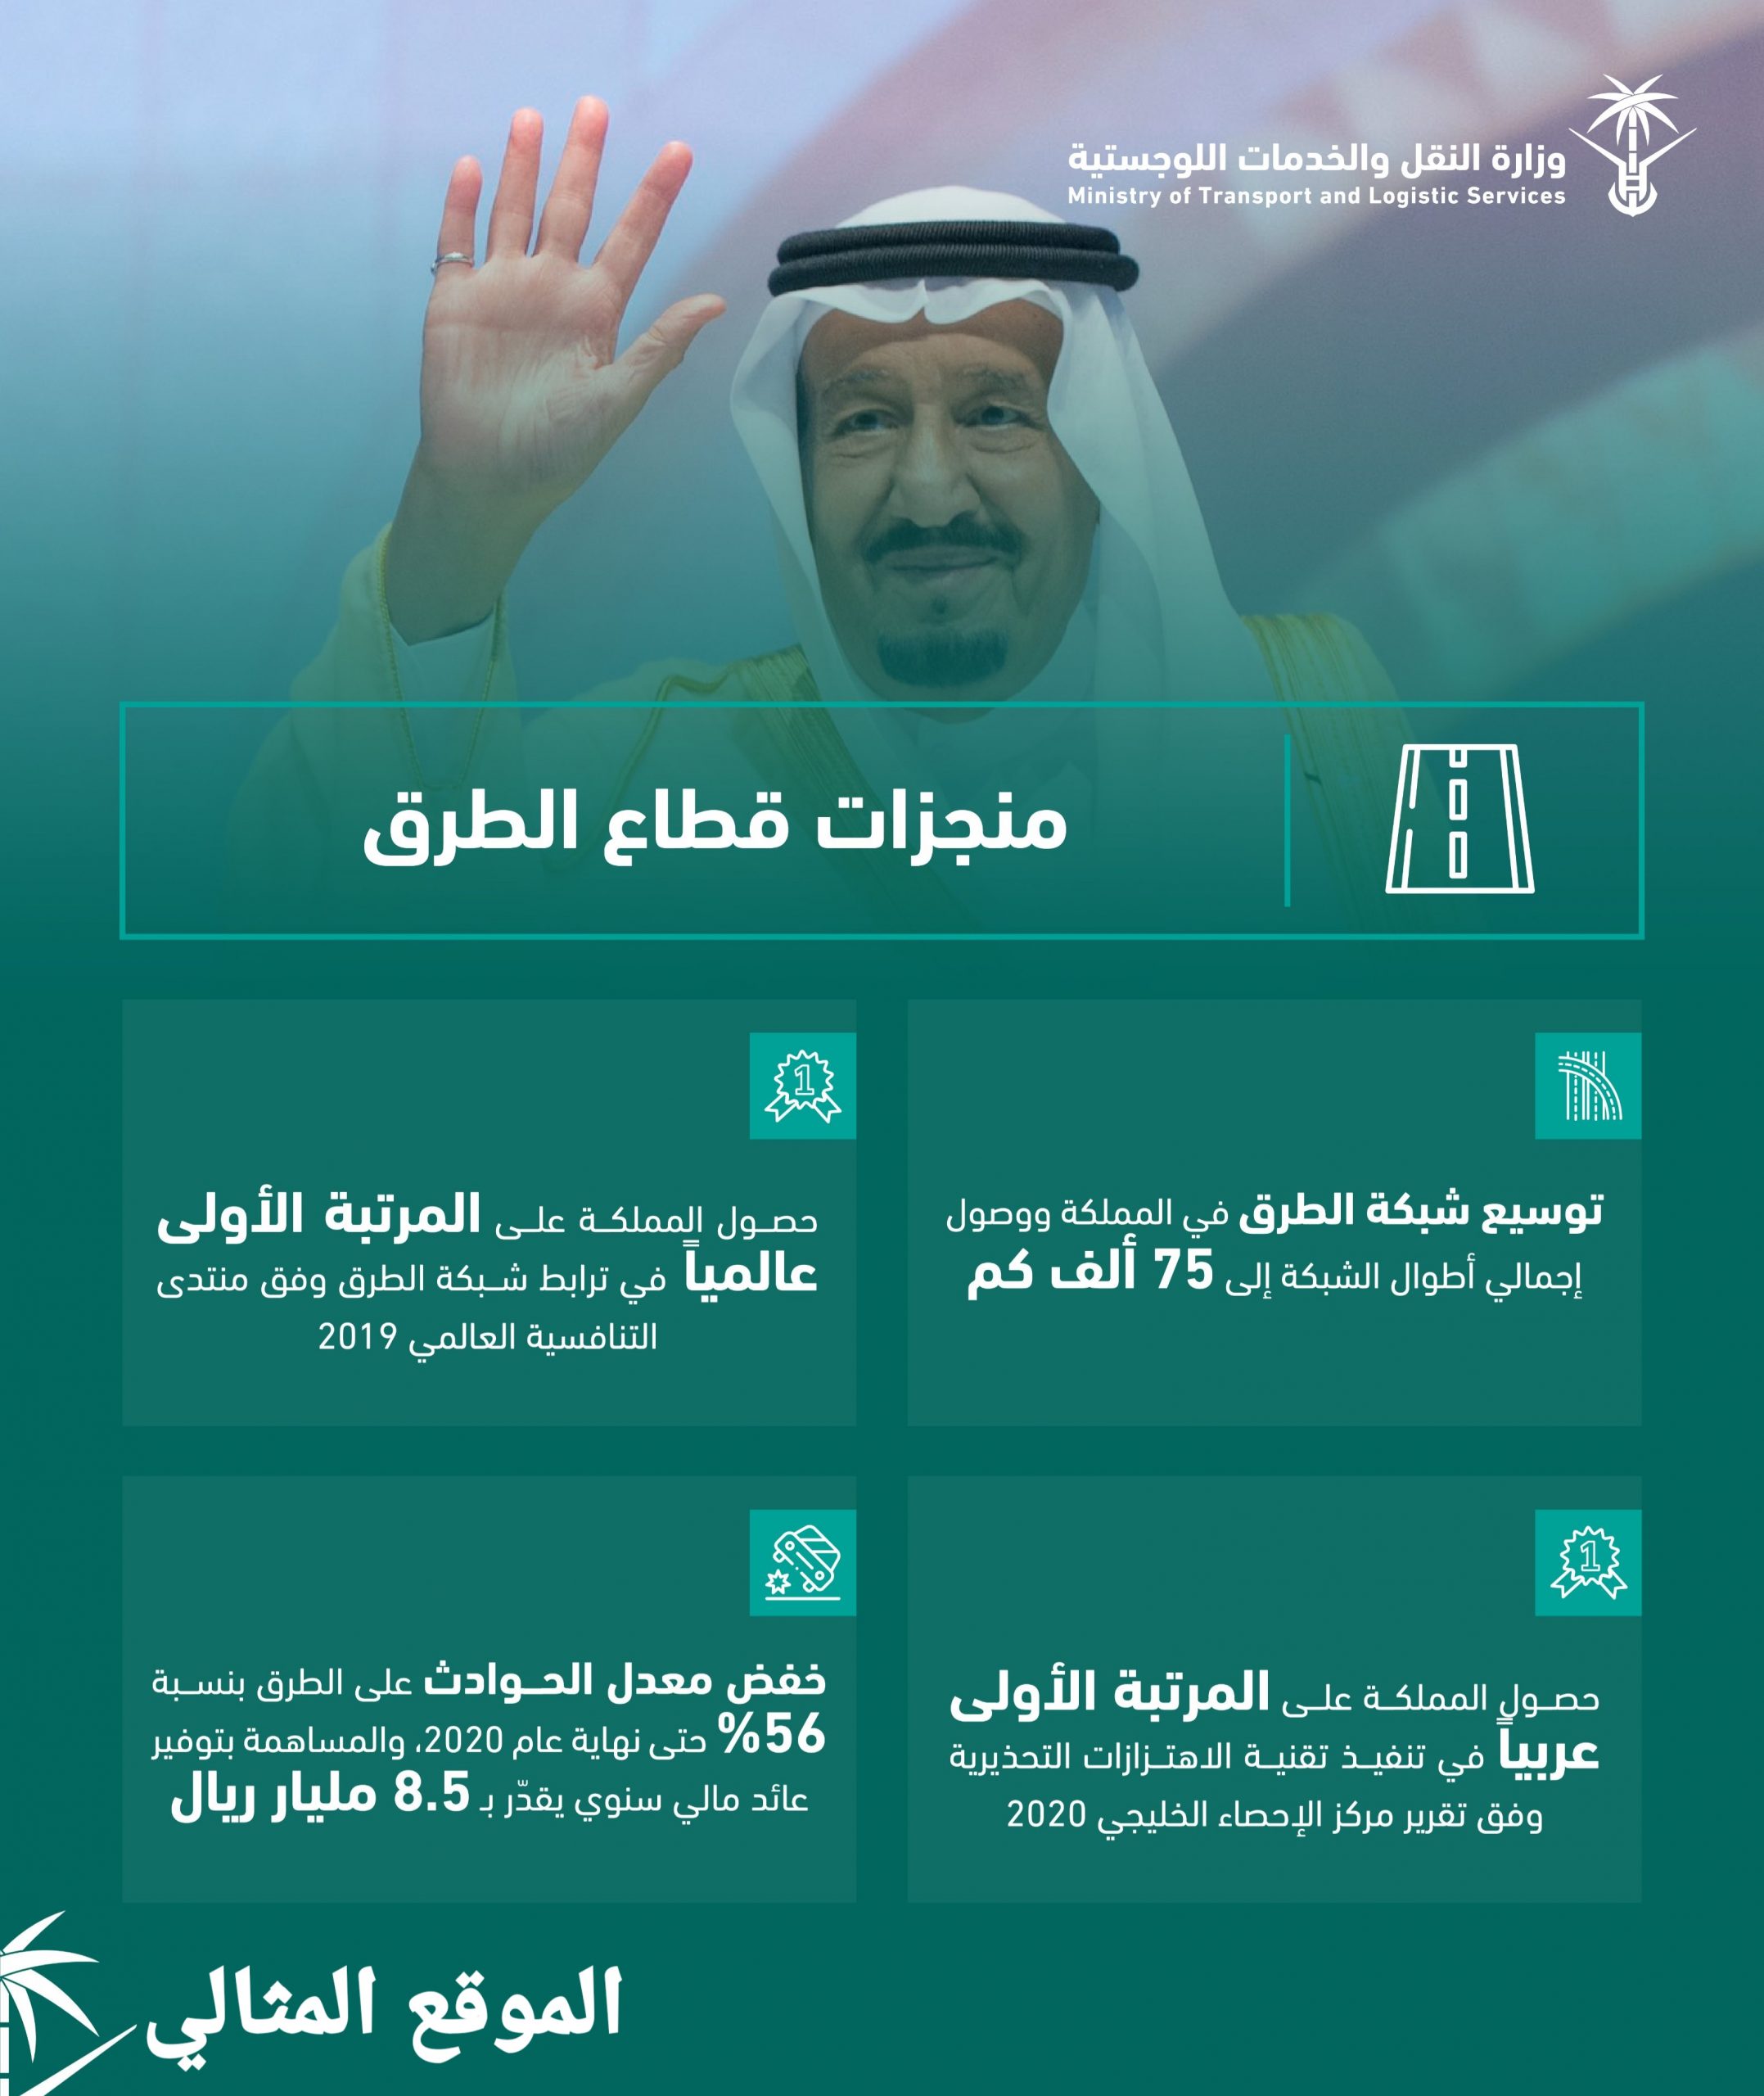 بحث عن الطرق والمواصلات في السعودية